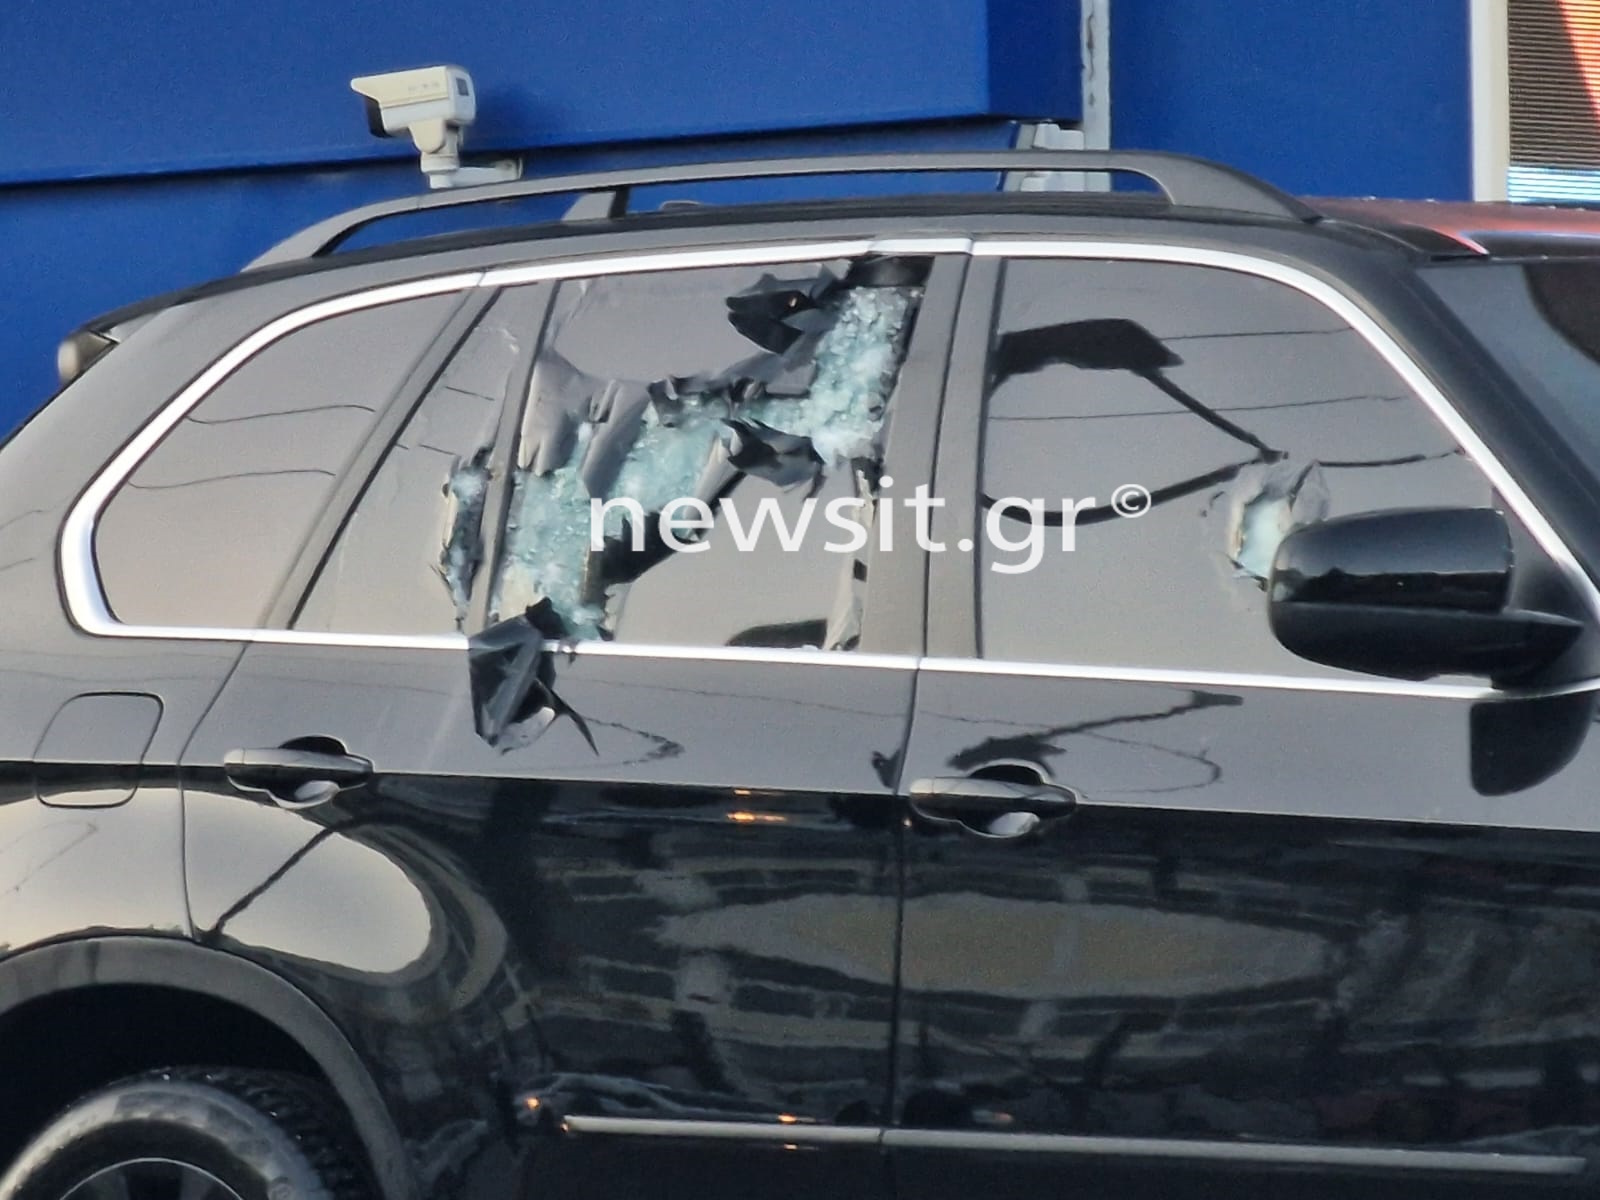 Νέος Κόσμος: Εκτέλεσαν τον Βαγγέλη Ζαμπούνη με τρία καλάσνικοφ έξω από το βενζινάδικο και έκαψαν τη Lexus